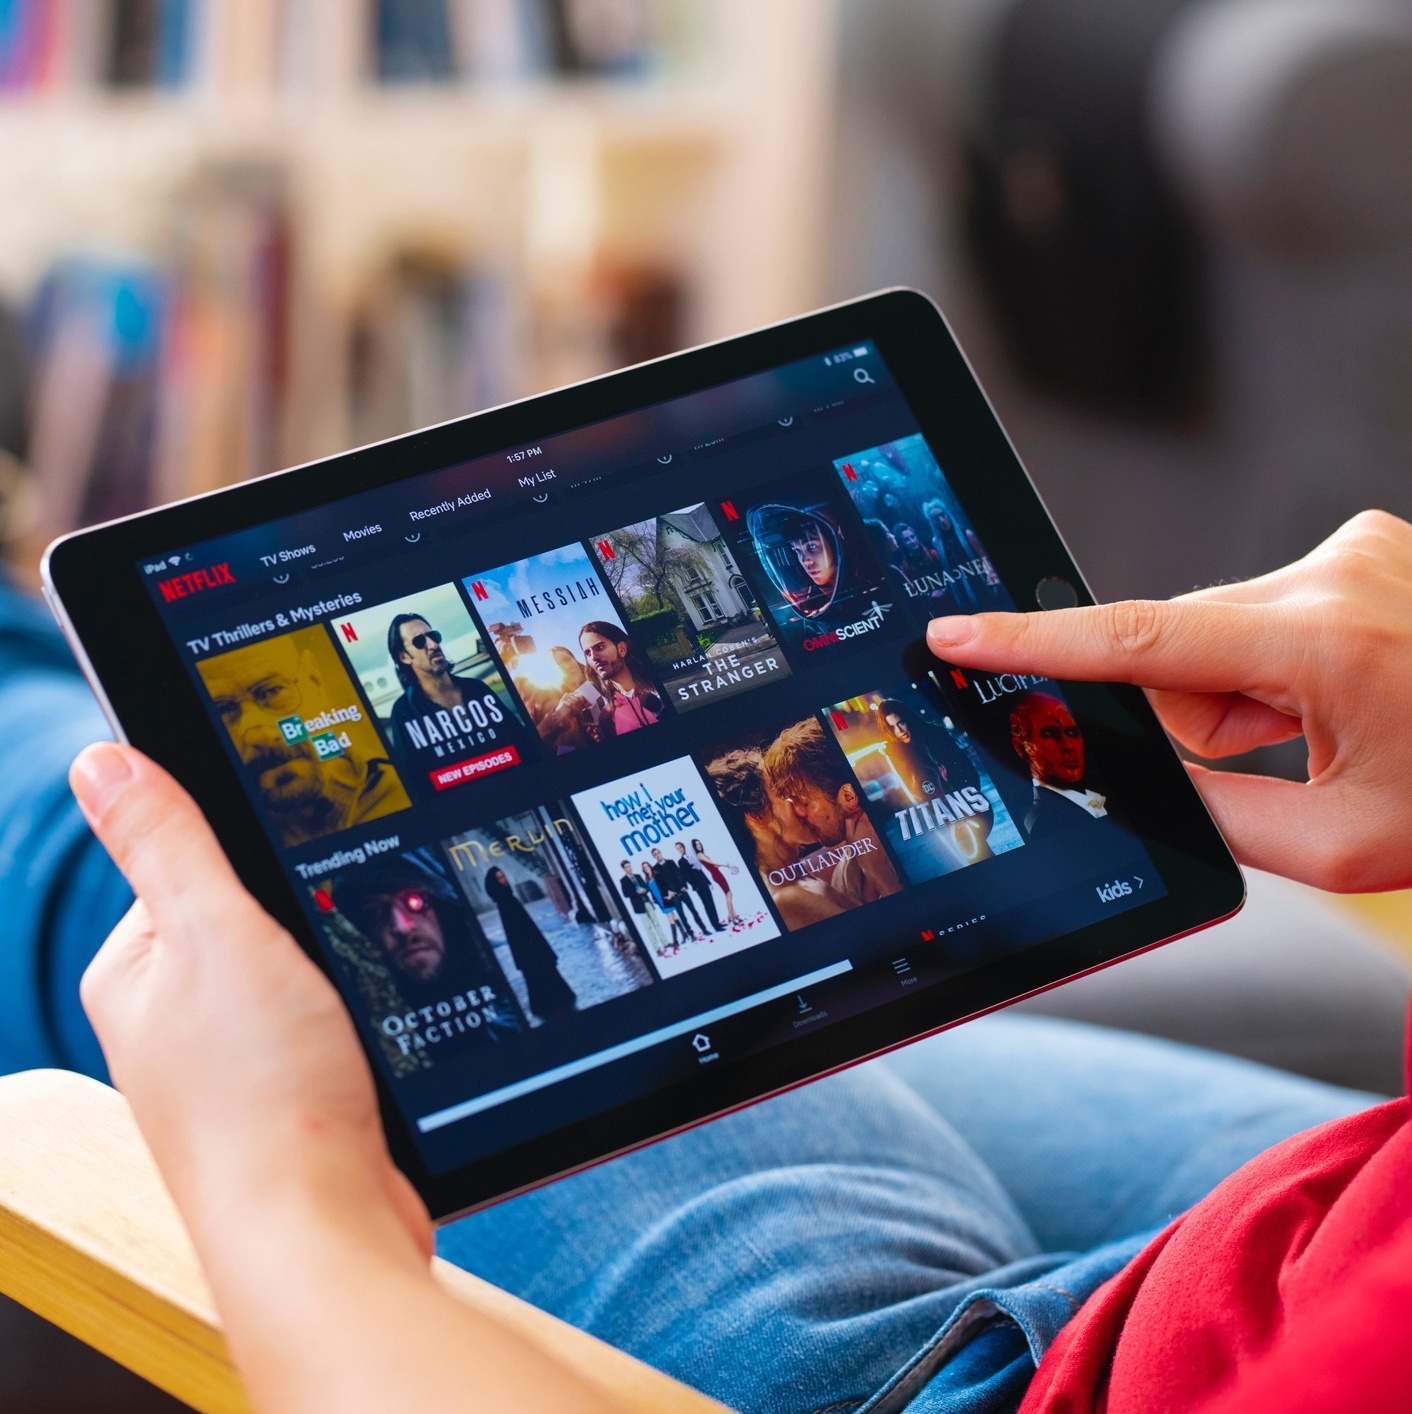 Netflix estreia no Brasil com plano de R$ 15 ao mês – Tecnoblog